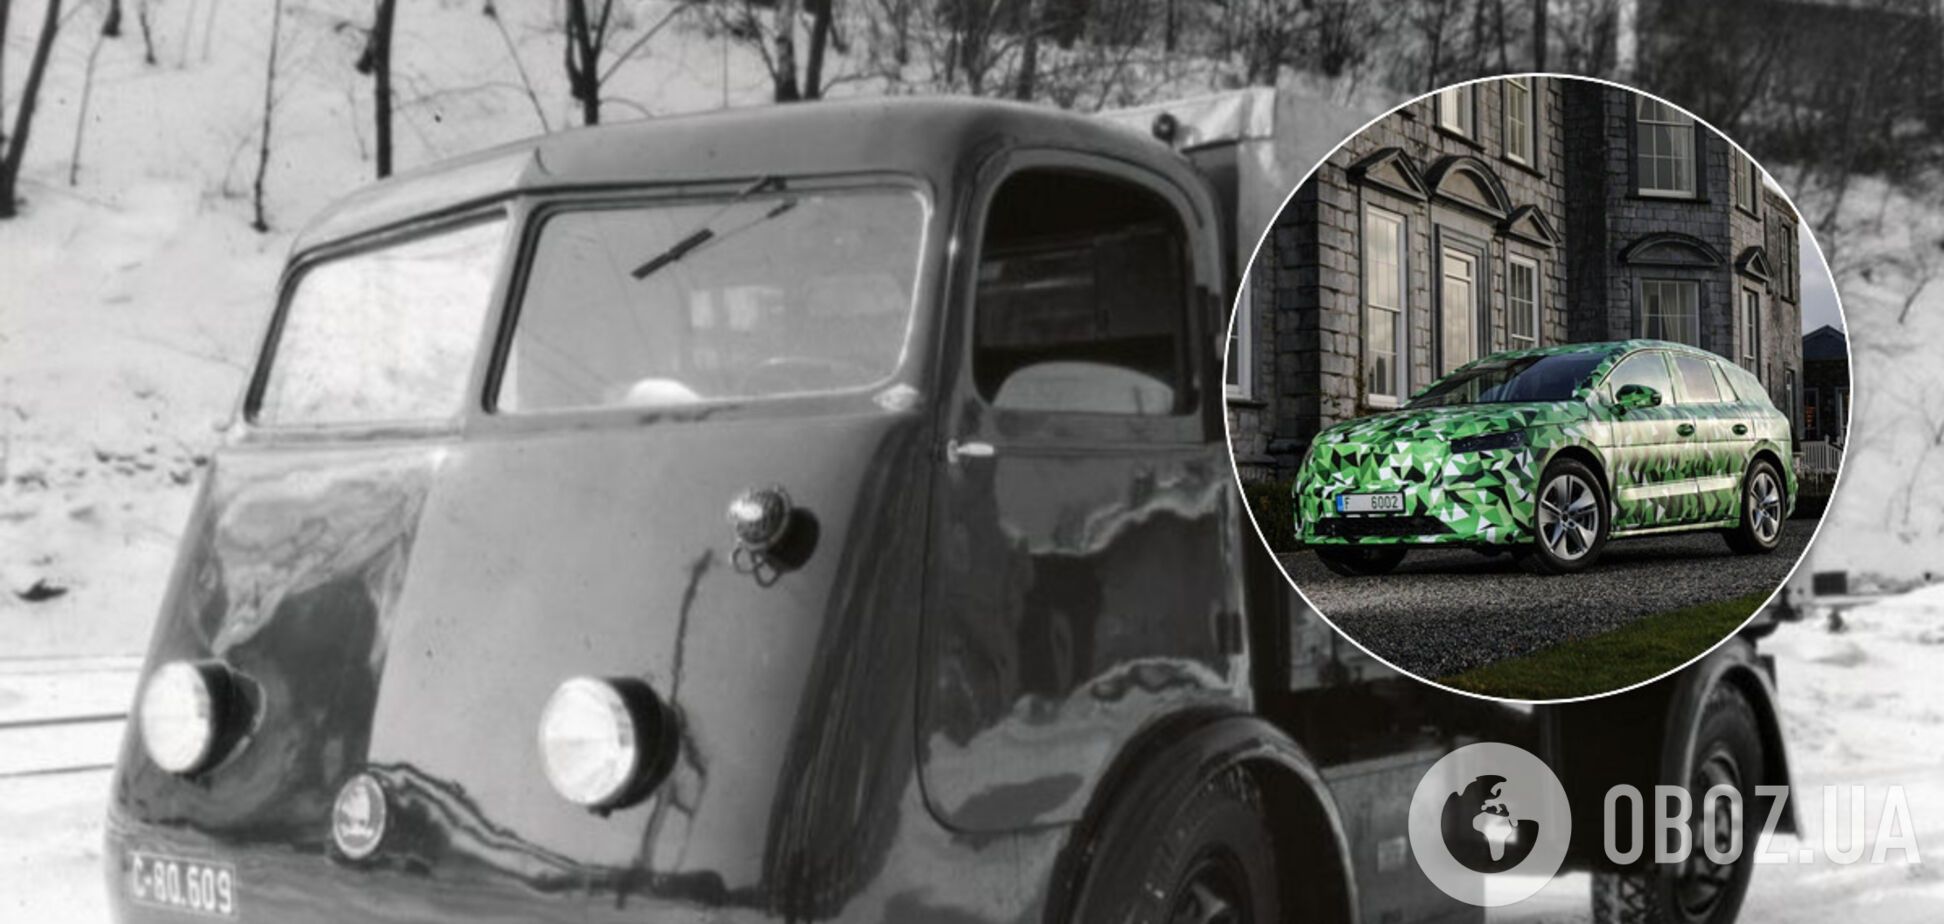 Первый электромобиль Skoda еще в 1939 году развозил пиво